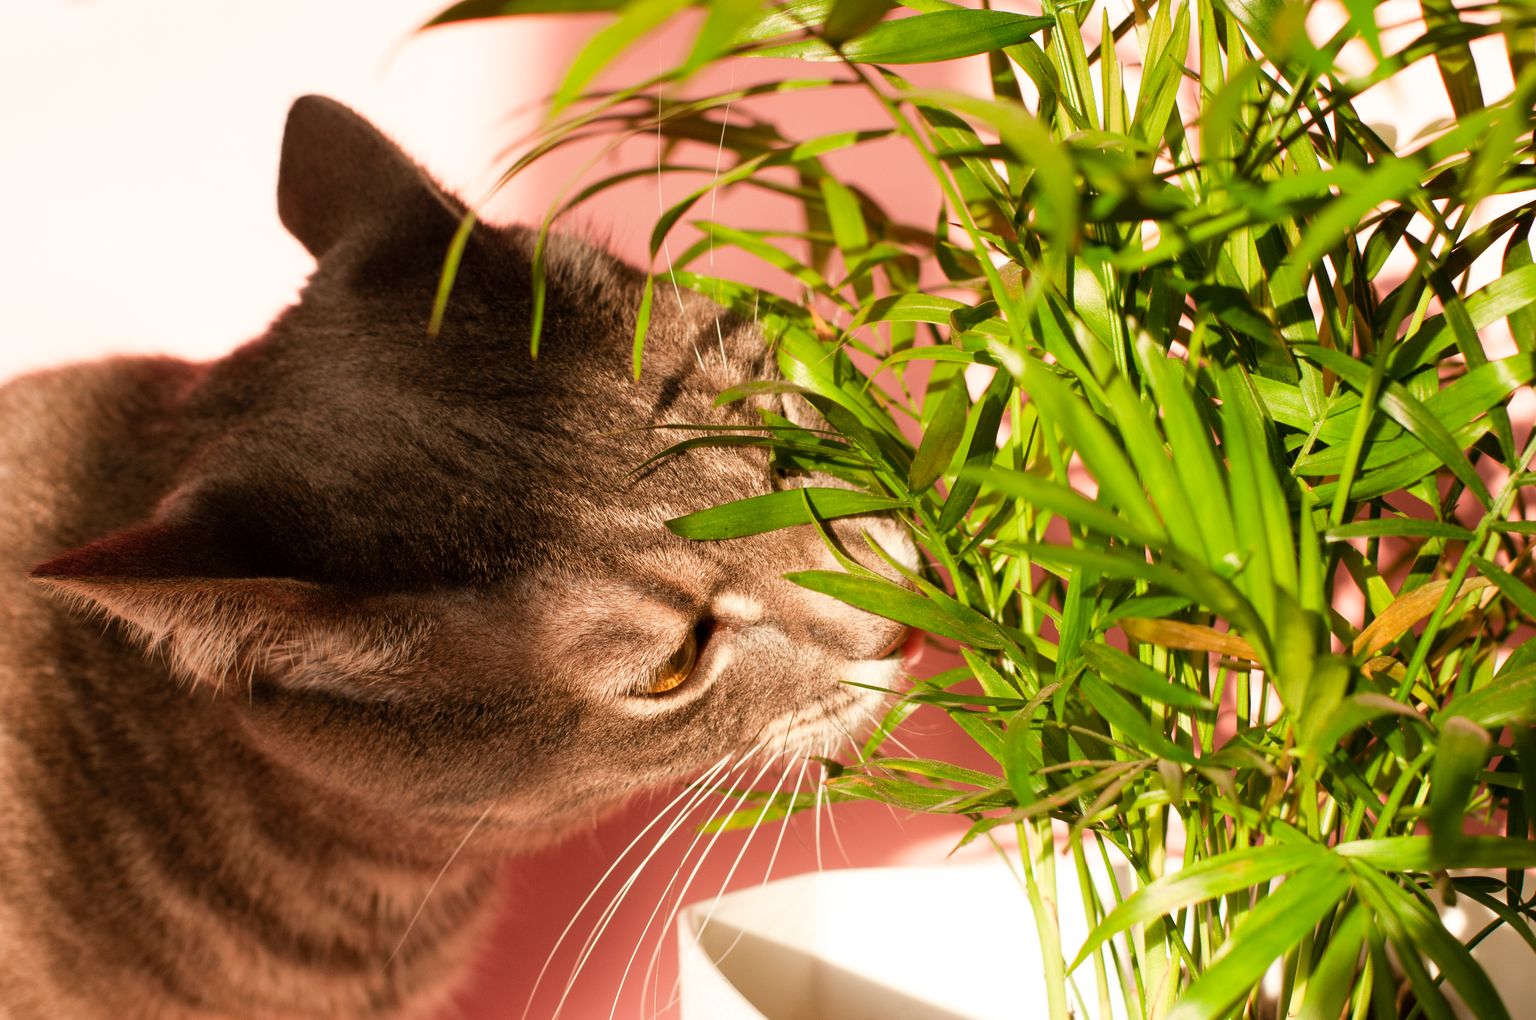 Некоторые комнатные растения опасны для кошек. Иллюстративное фото